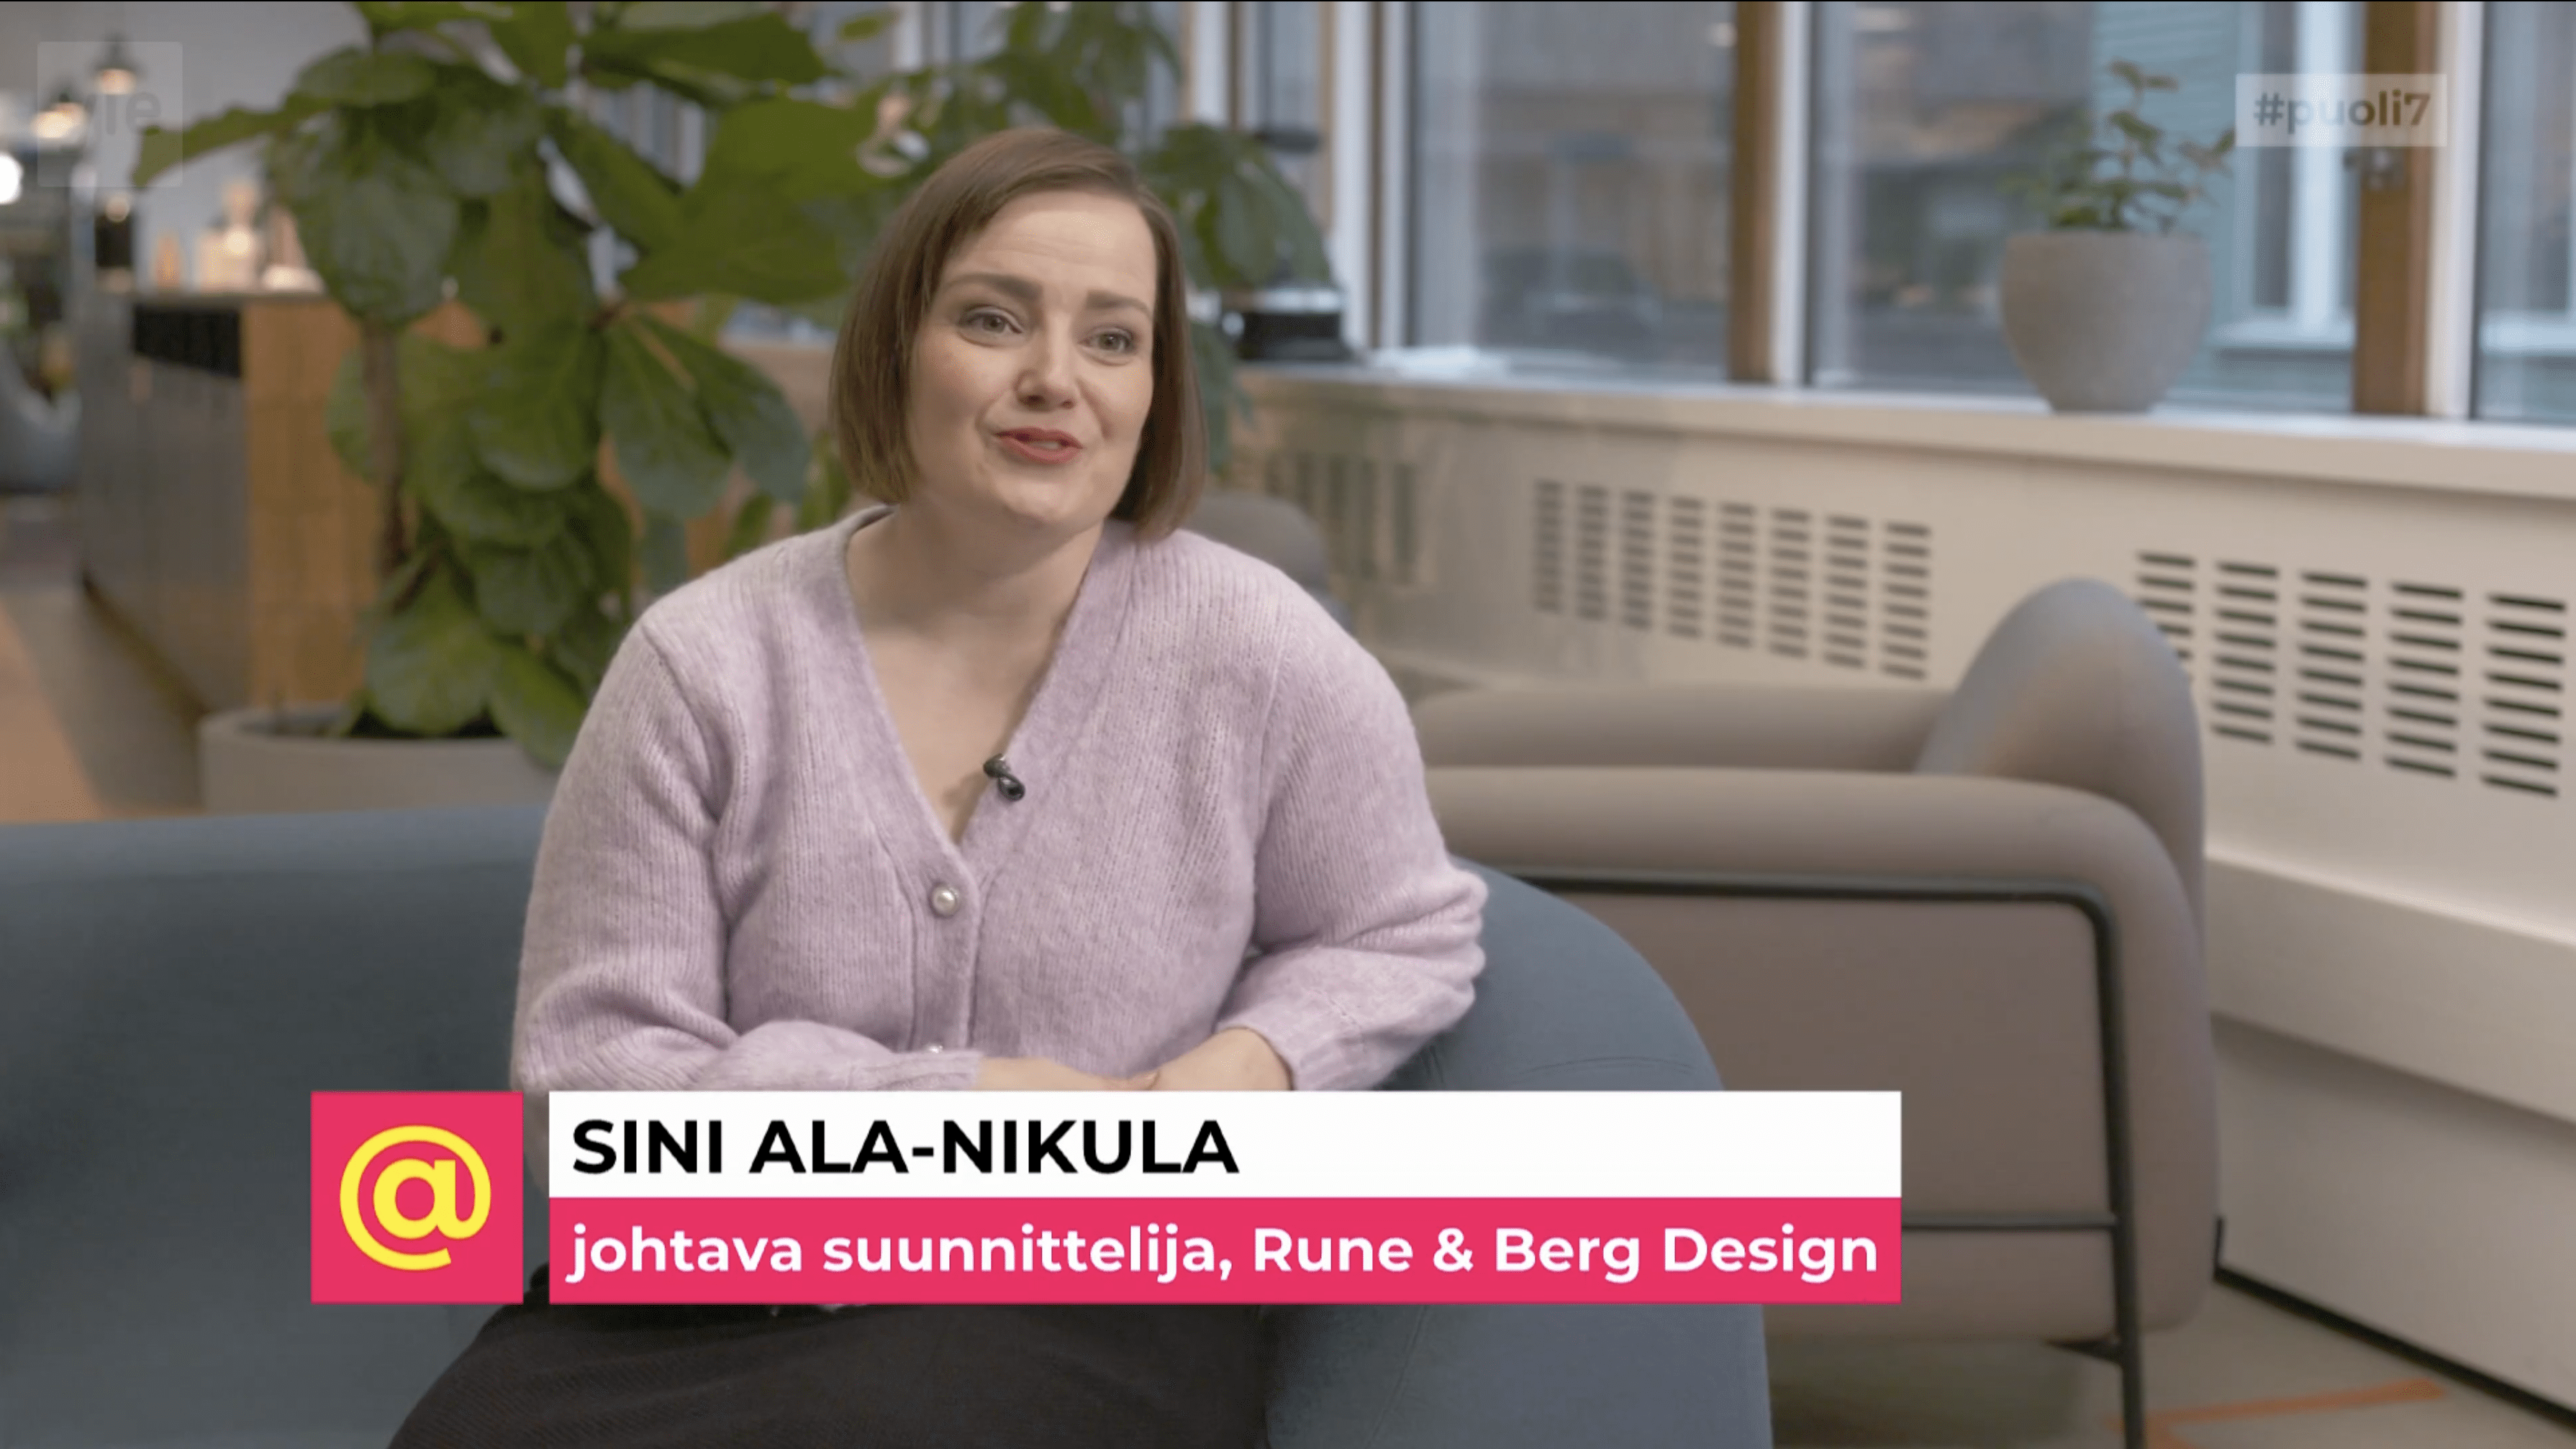 Rune & Berg Designin Sini Ala-Nikula mukana puoli seitsemän -ohjelmassa